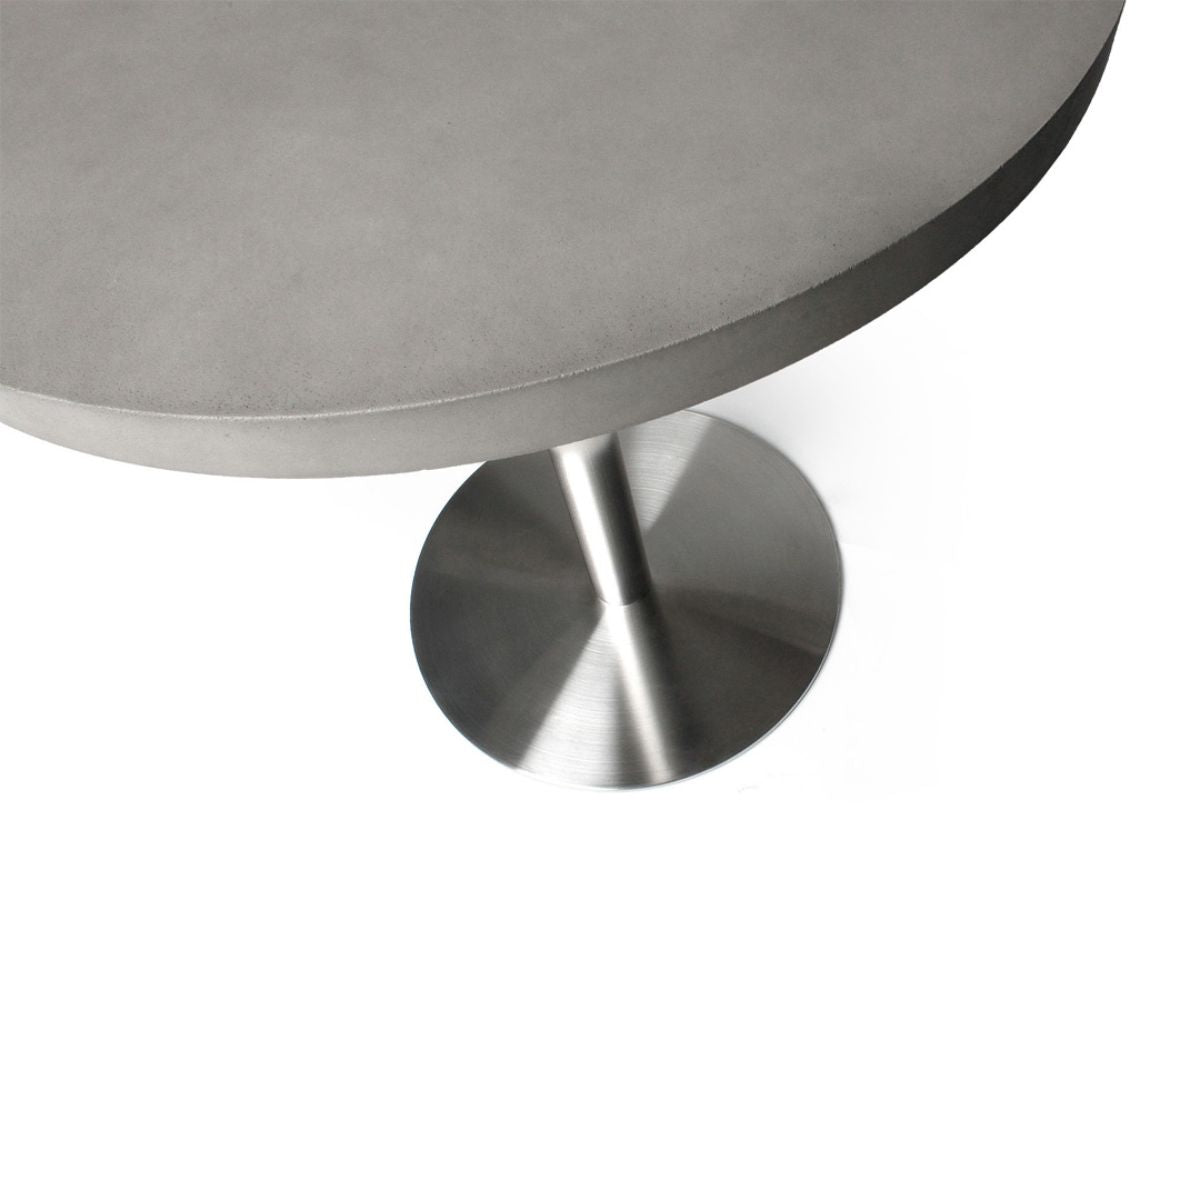 Table de bistrot ronde design en béton